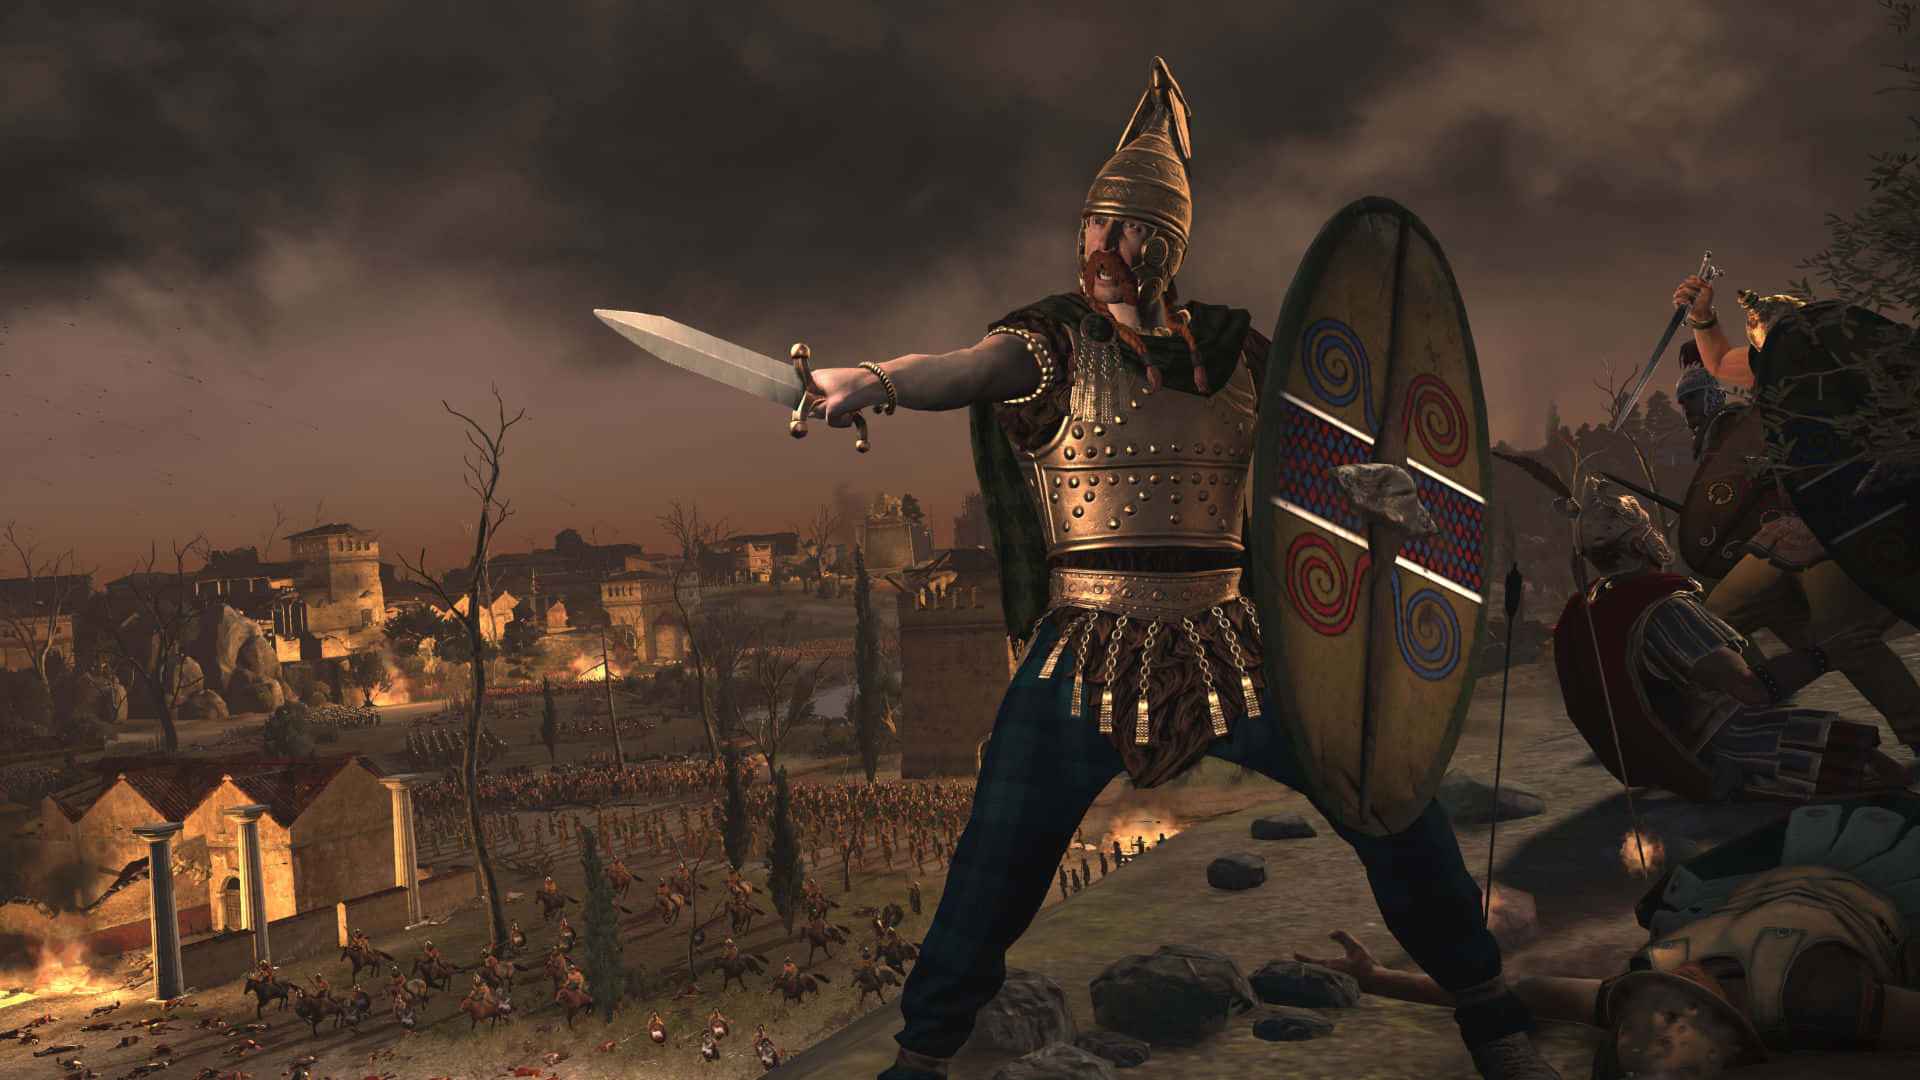 Best Total War Rome 2 Background Dark 1920 x 1080 Background